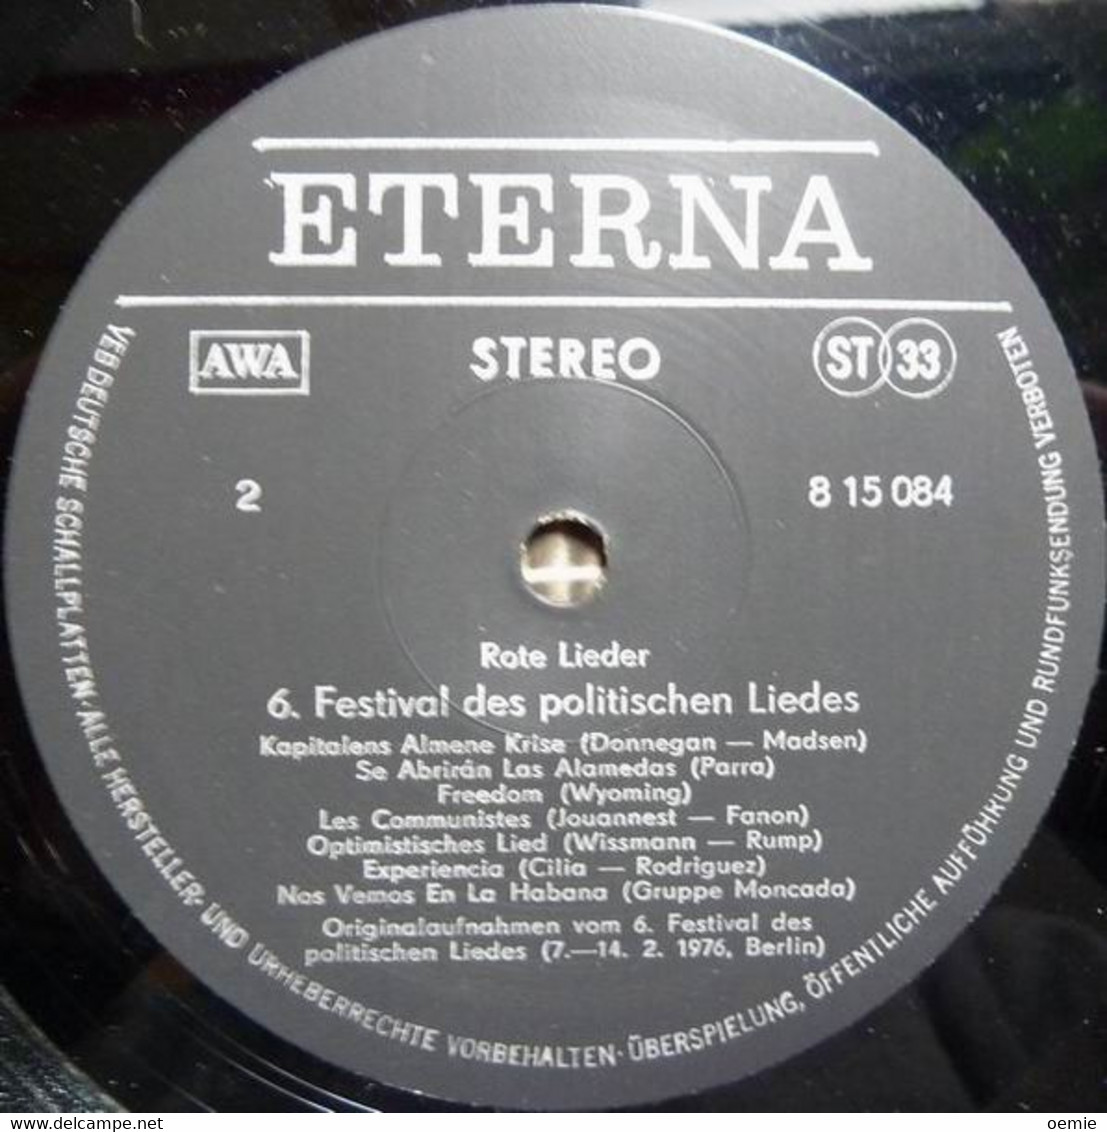 ROTE  LIEDER  °  BERLIN  7 / 14 2 / 1976  °  6 FESTIVAL  DES POLITISCHEN  LIEDES - Andere - Duitstalig